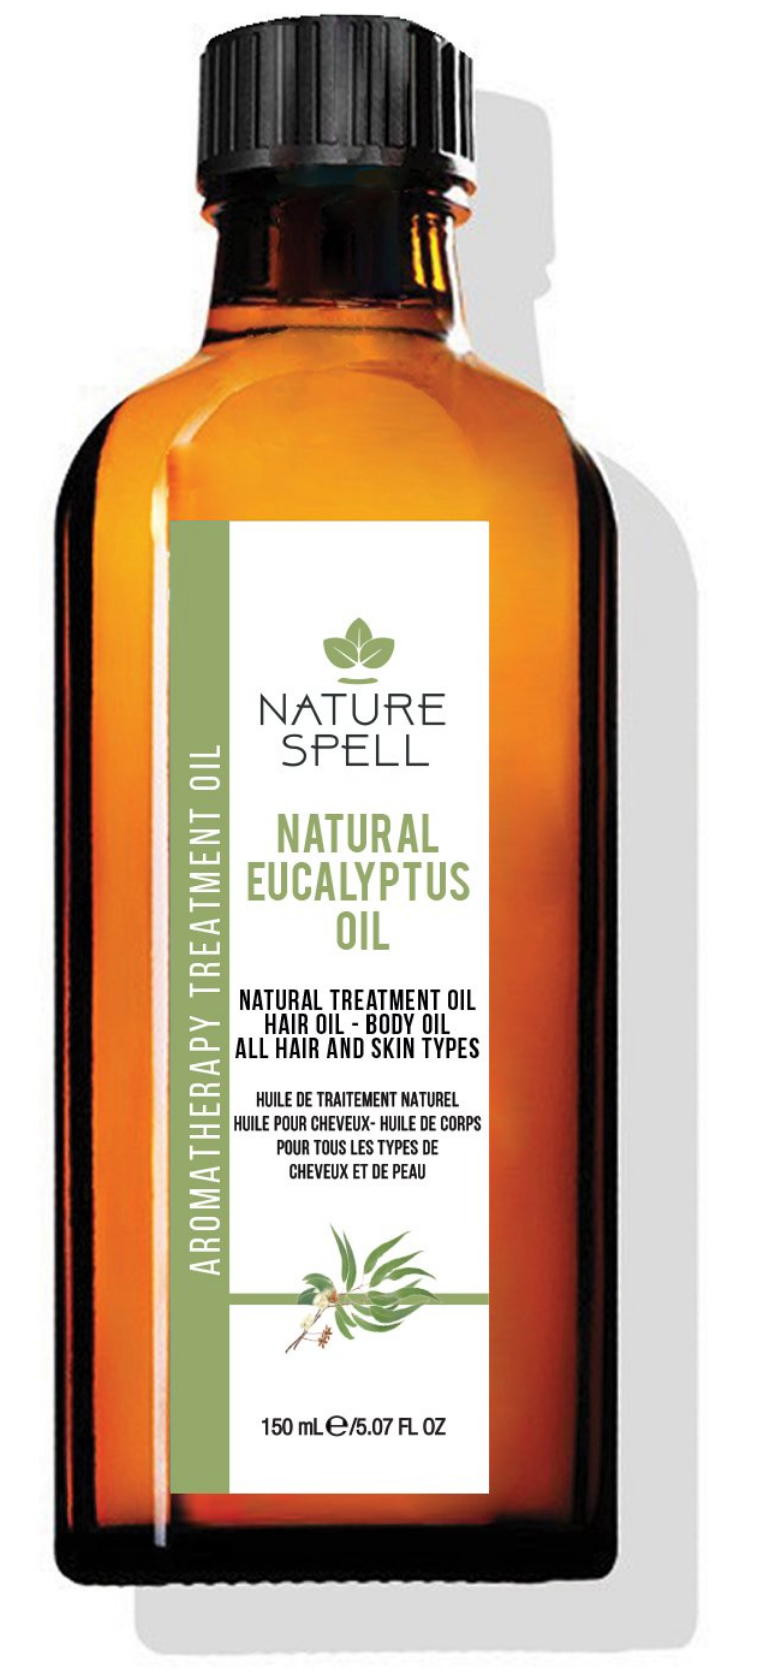 Nature Spell - Natural Eucalyptus Oil,150 ML